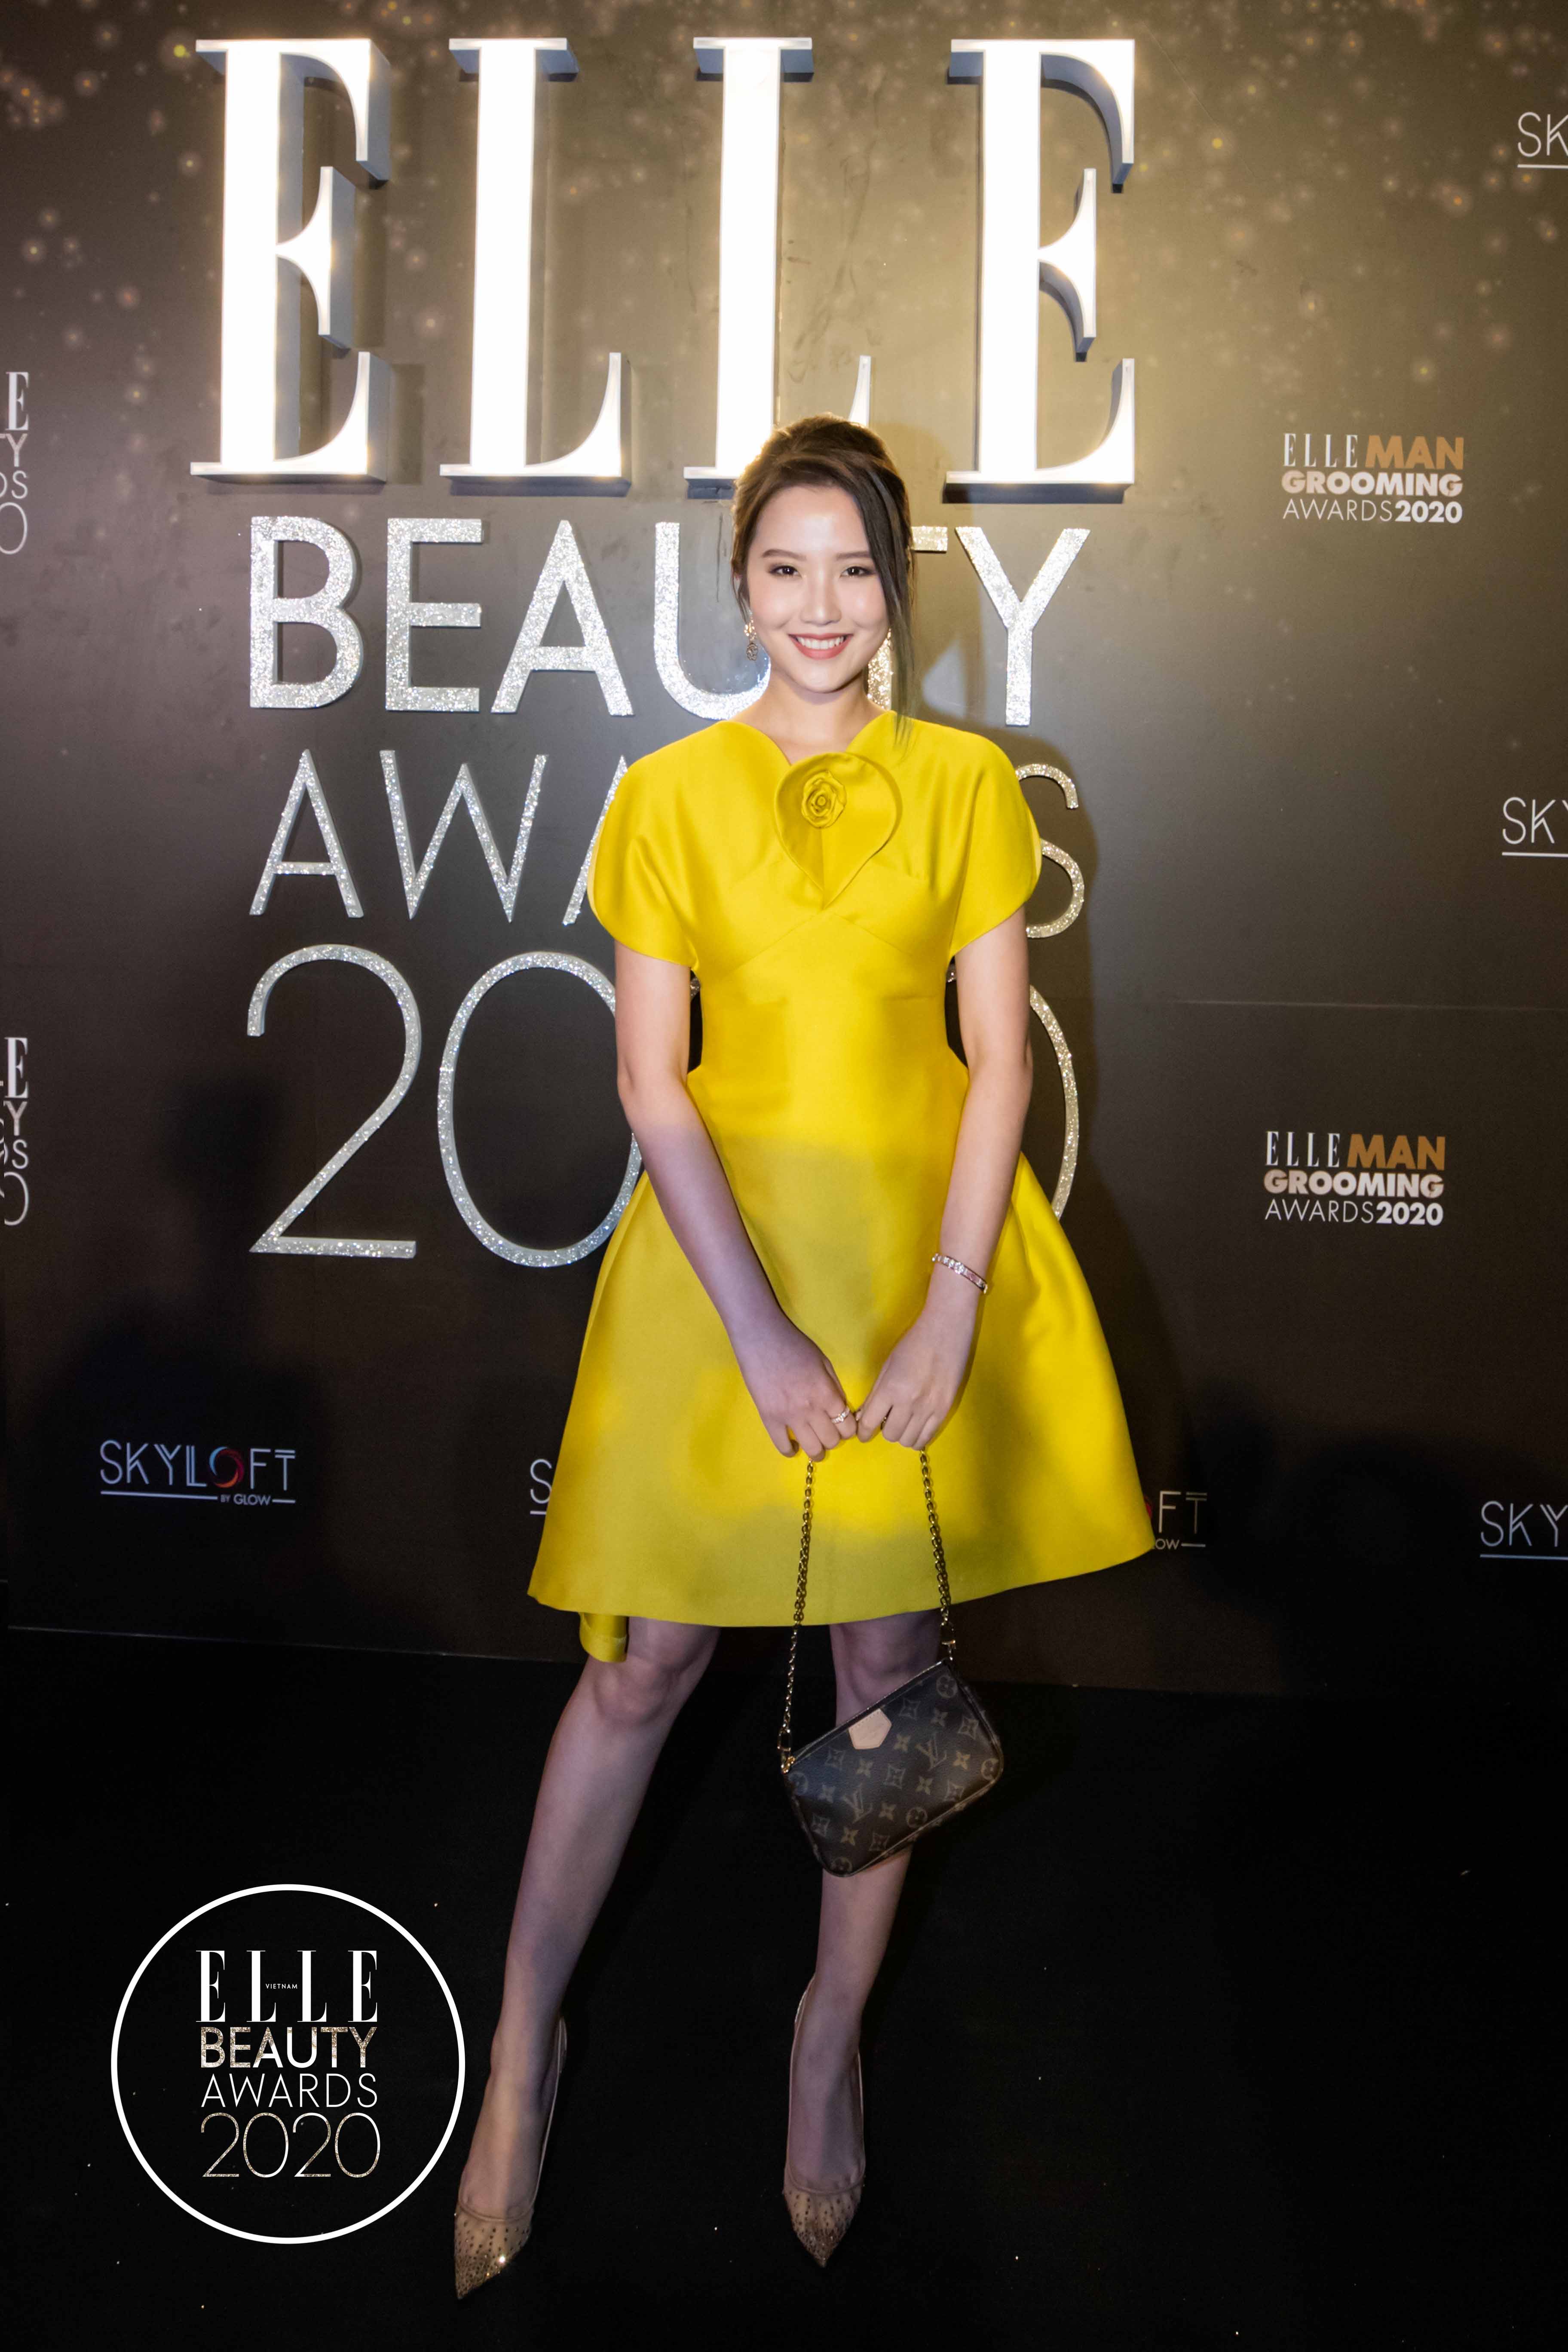 ELLE Beauty Awards 2020